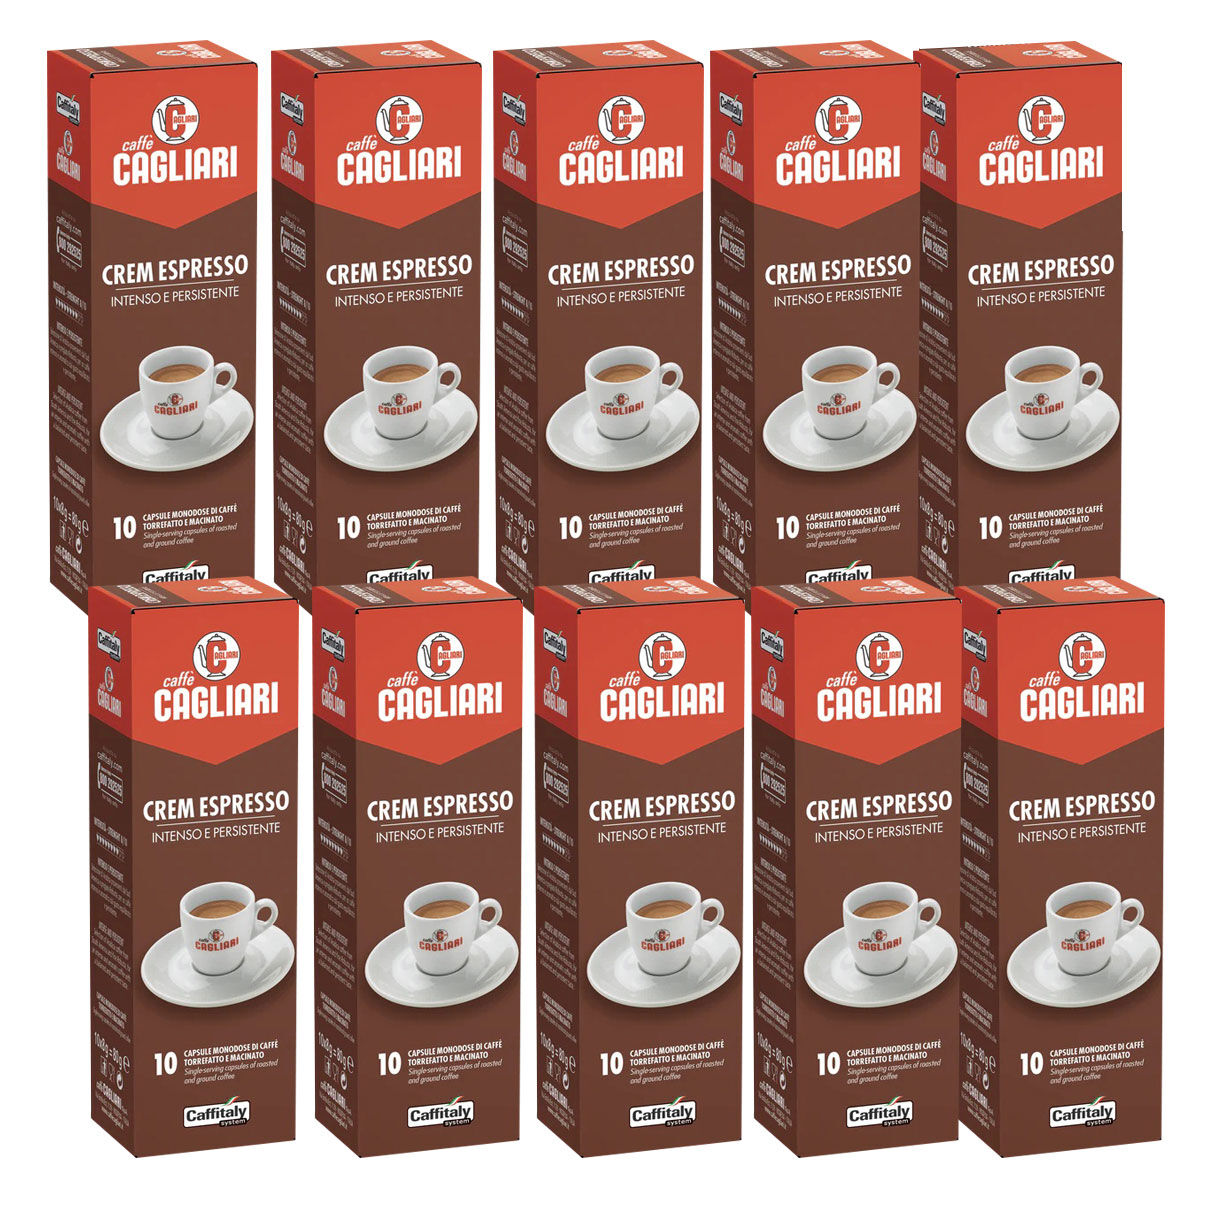 100 Capsule Caffitaly System Caffe' Cremespresso Pieno e Intenso